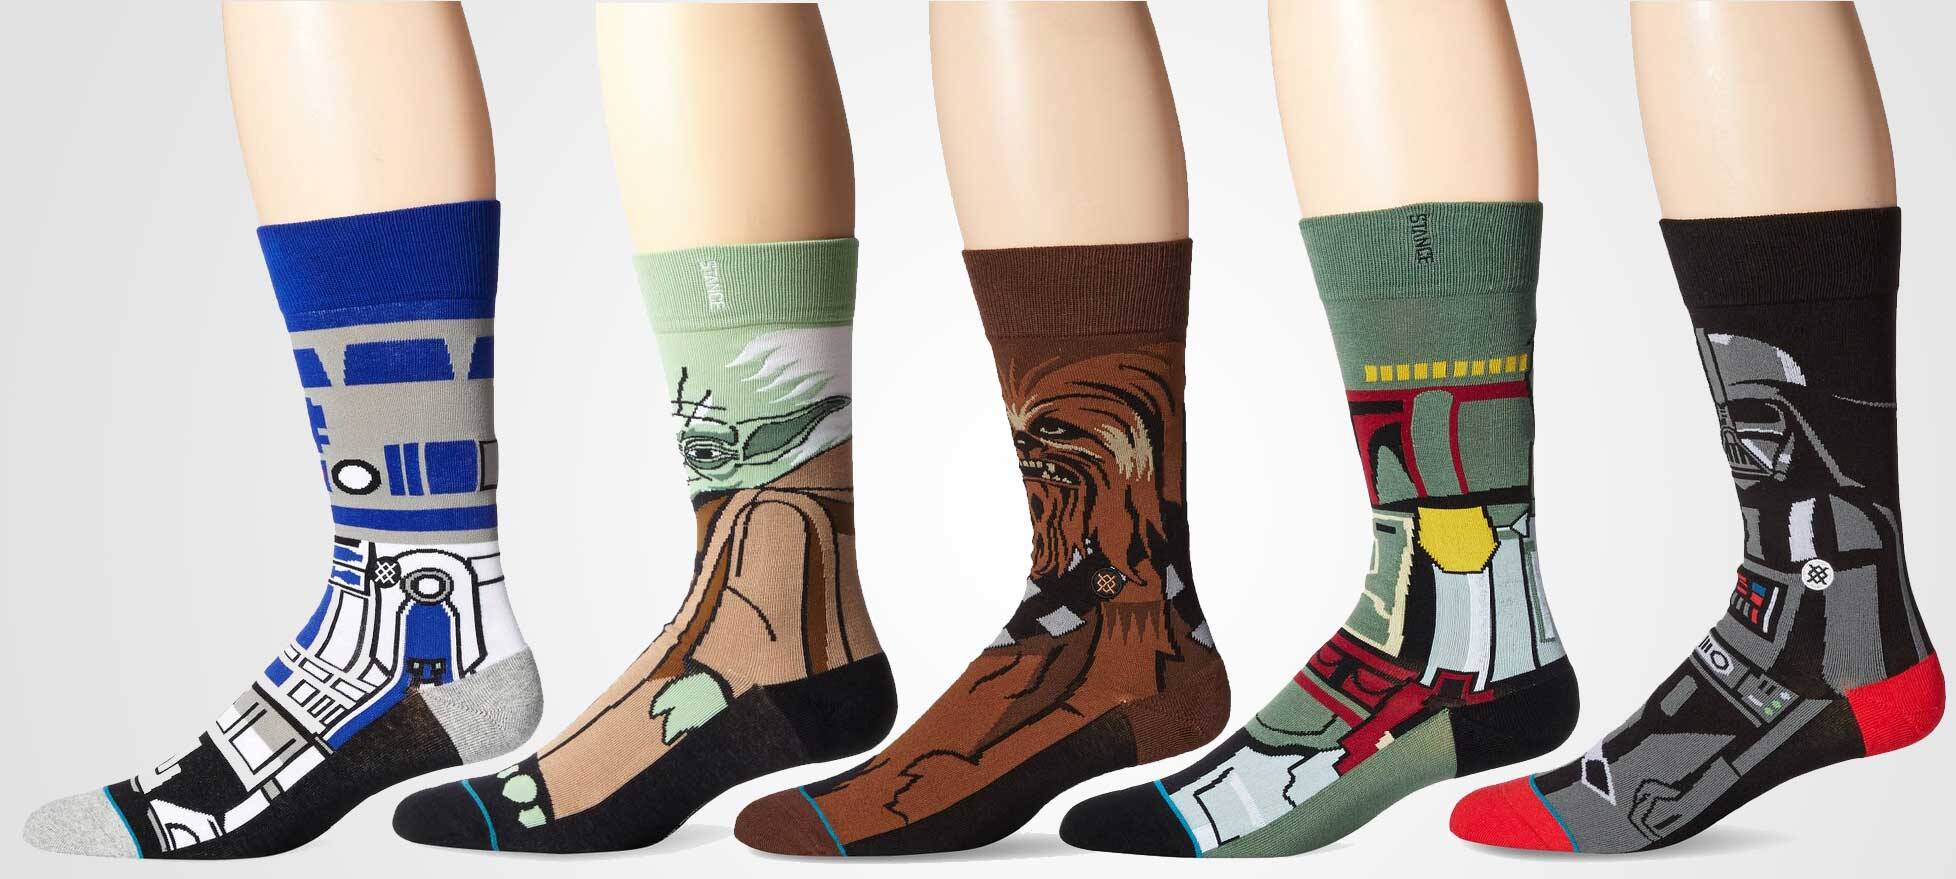 Star Wars Socks - coolthings.us